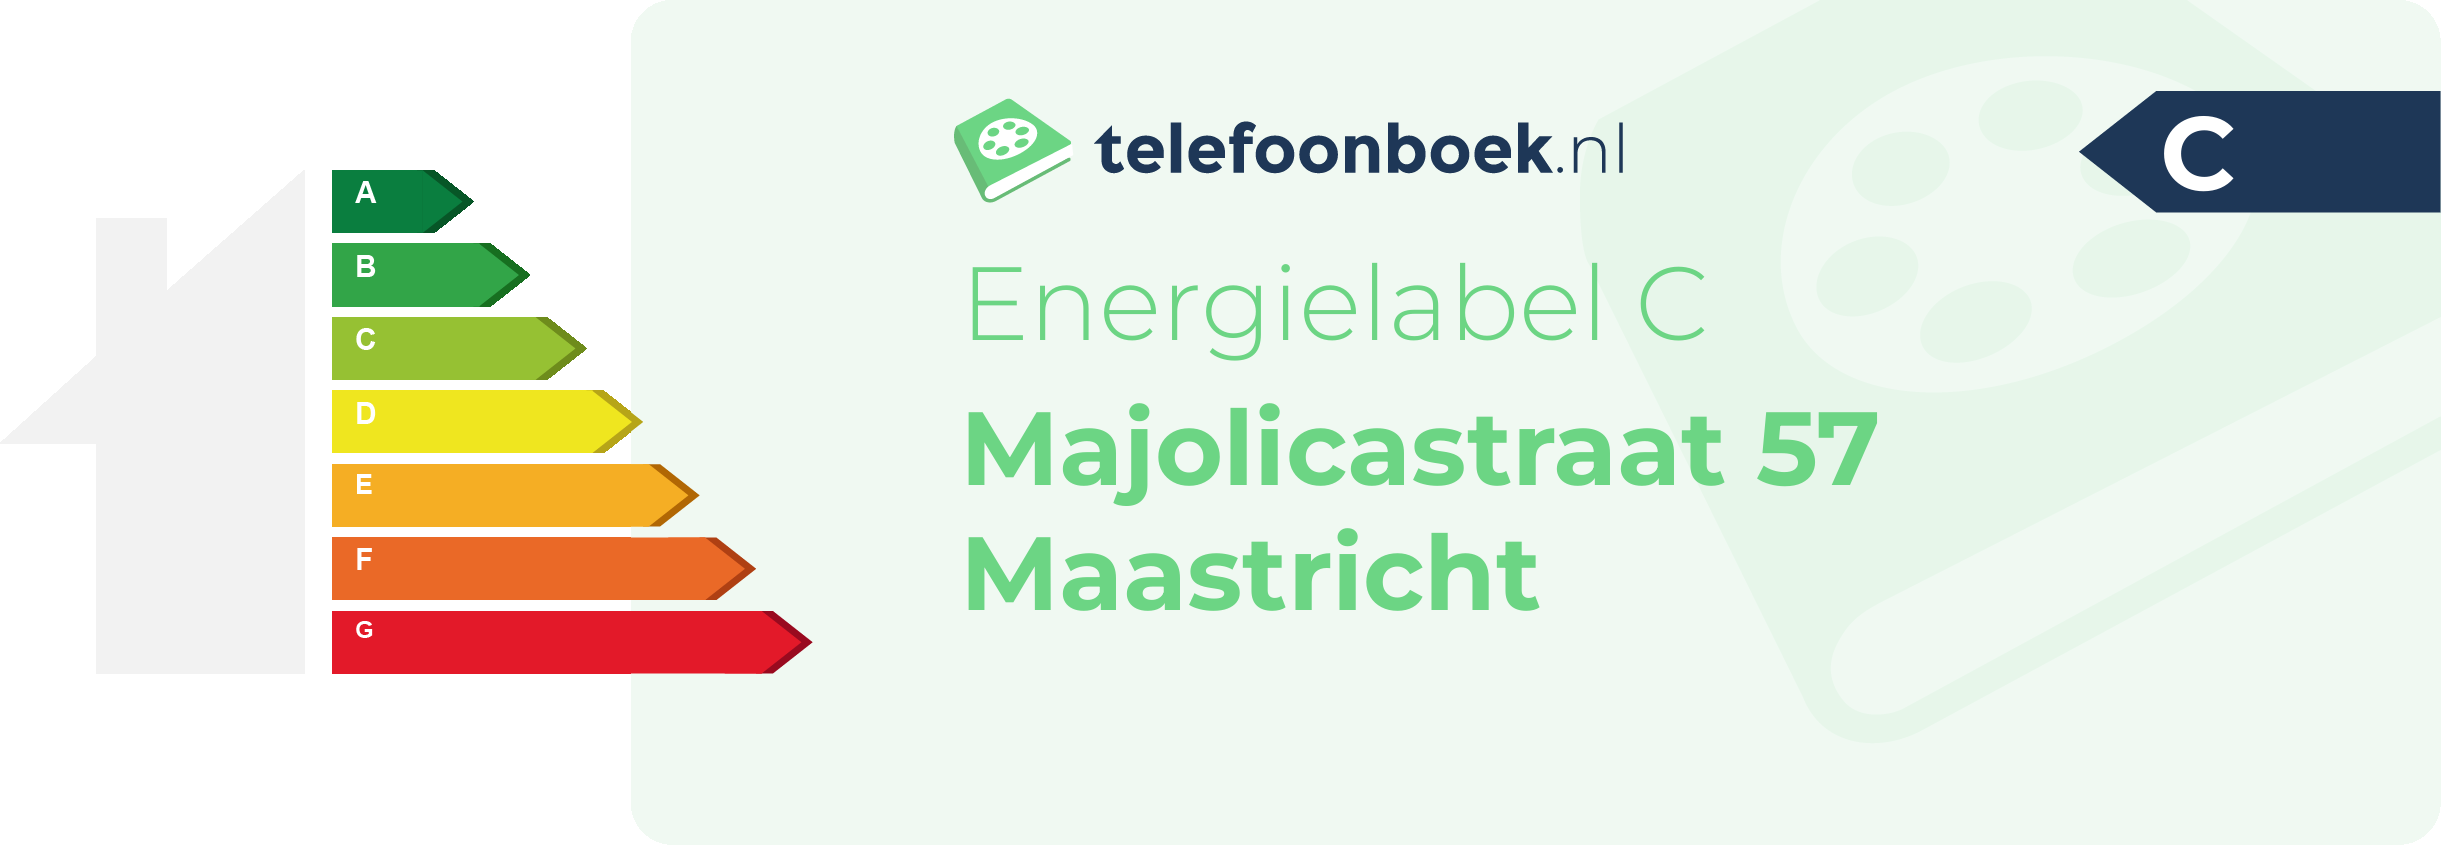 Energielabel Majolicastraat 57 Maastricht